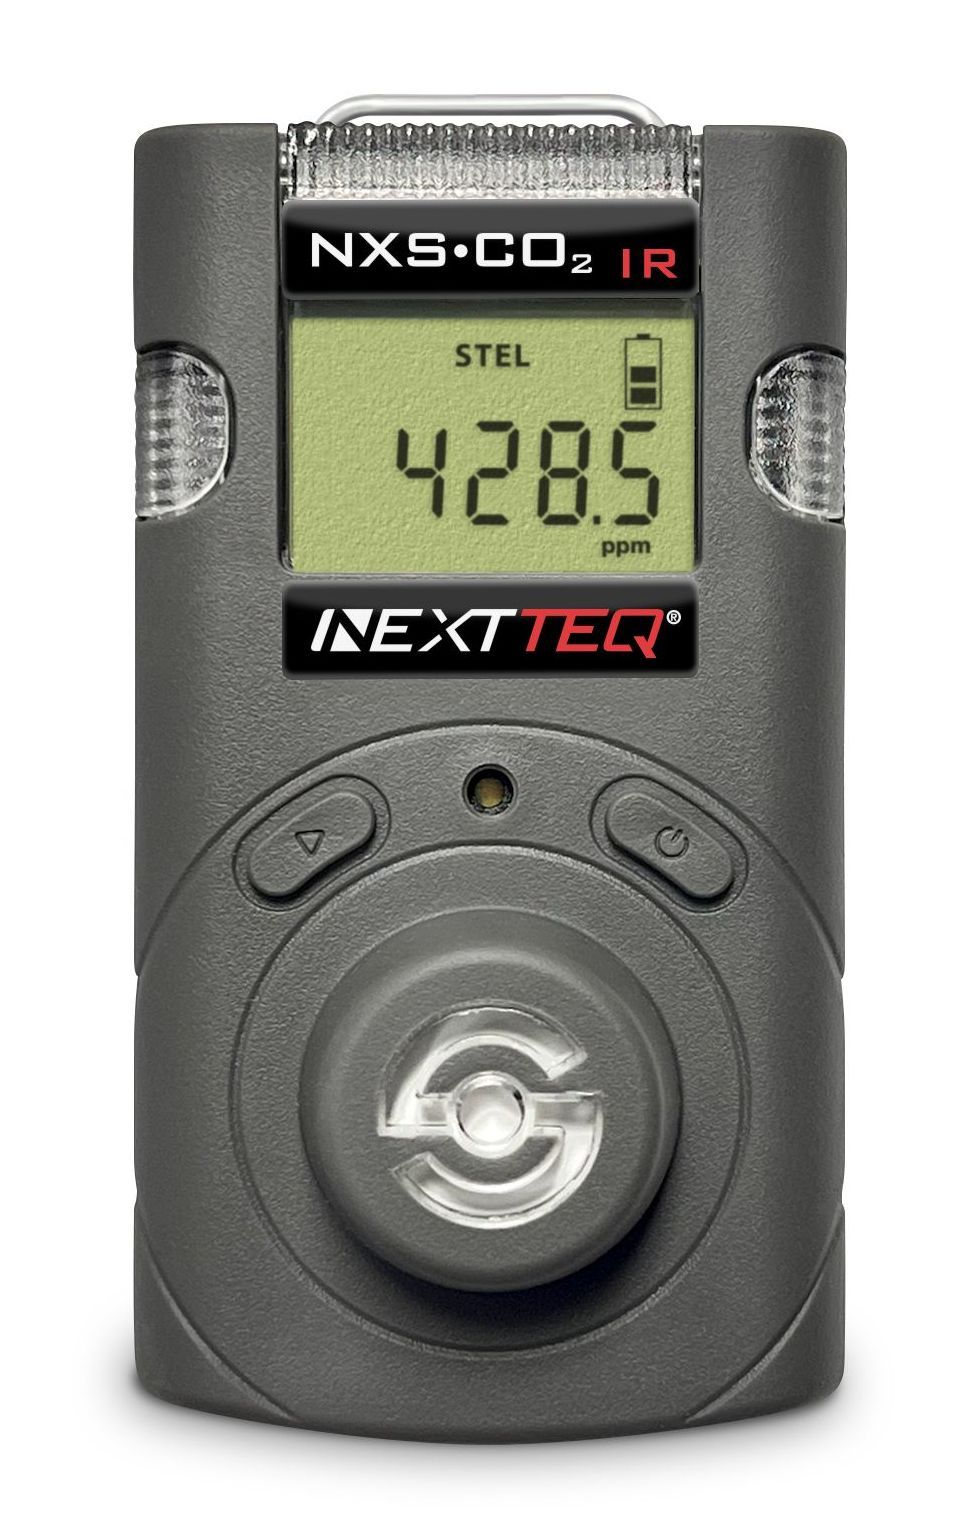 A Nextteq® CO2 IR Detector.